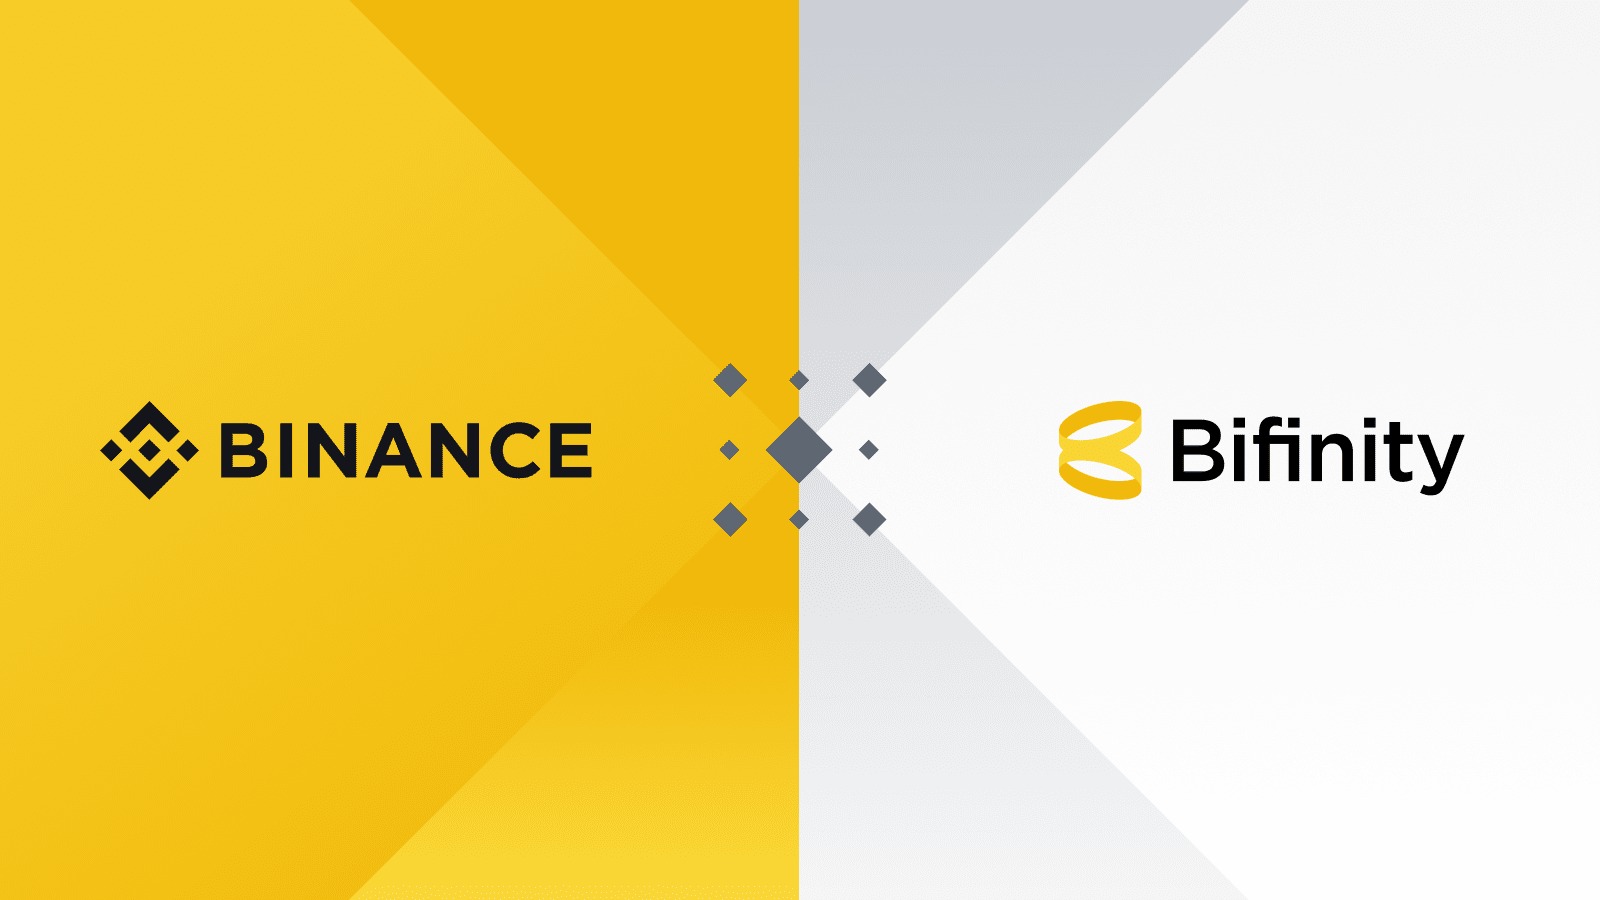 Binance launches new platform Bifinity